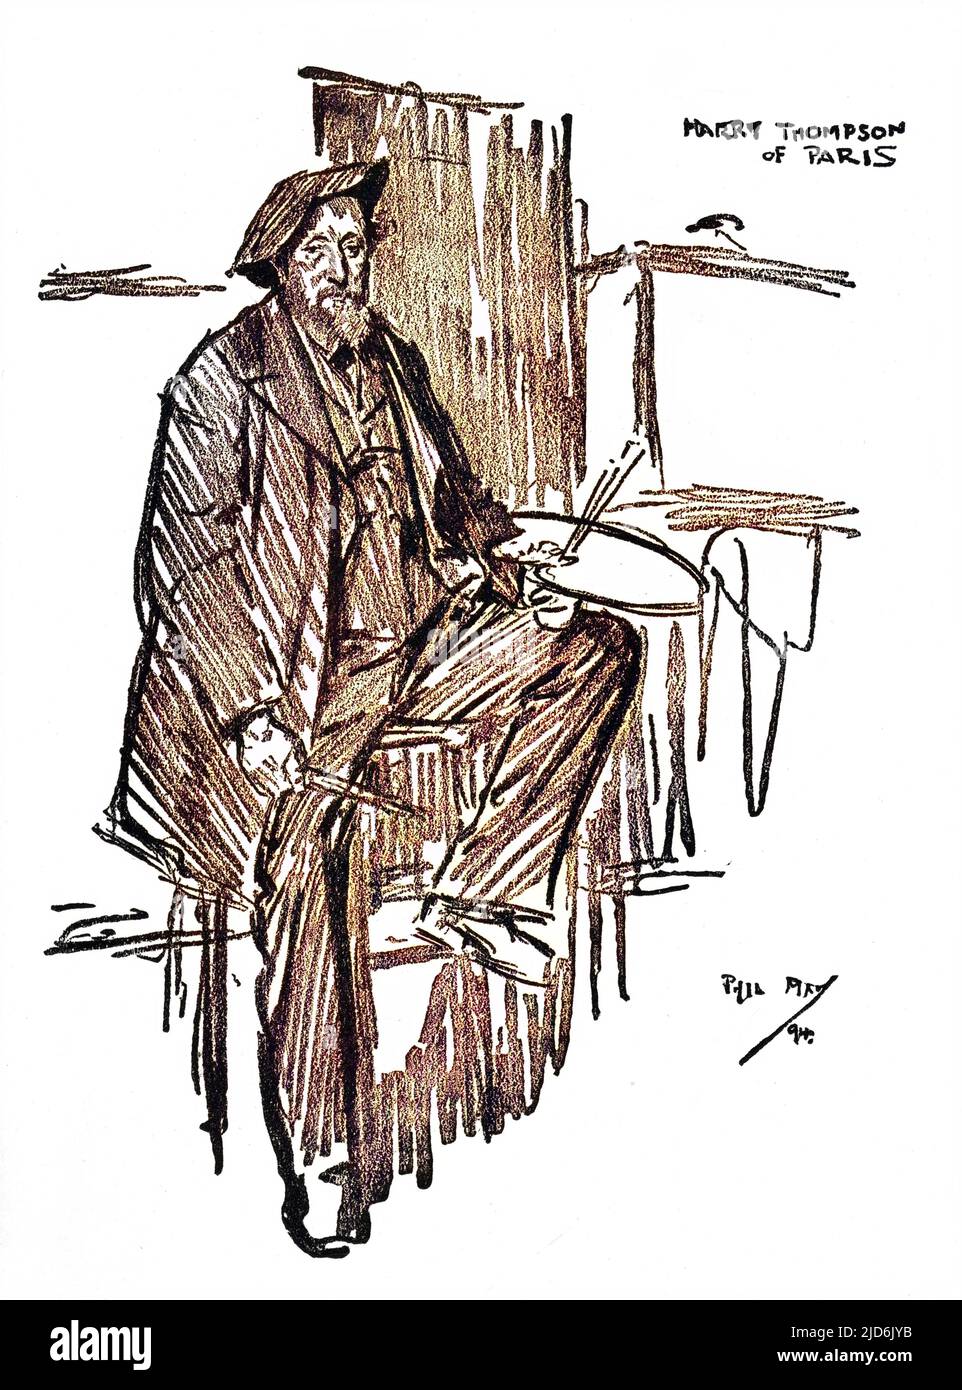 'Brother Brushs' - dessin de portrait de Phil May de l'artiste écossais (basé à Paris) Harry Thompson. Version colorisée de : 10803821 Date: 1894 Banque D'Images